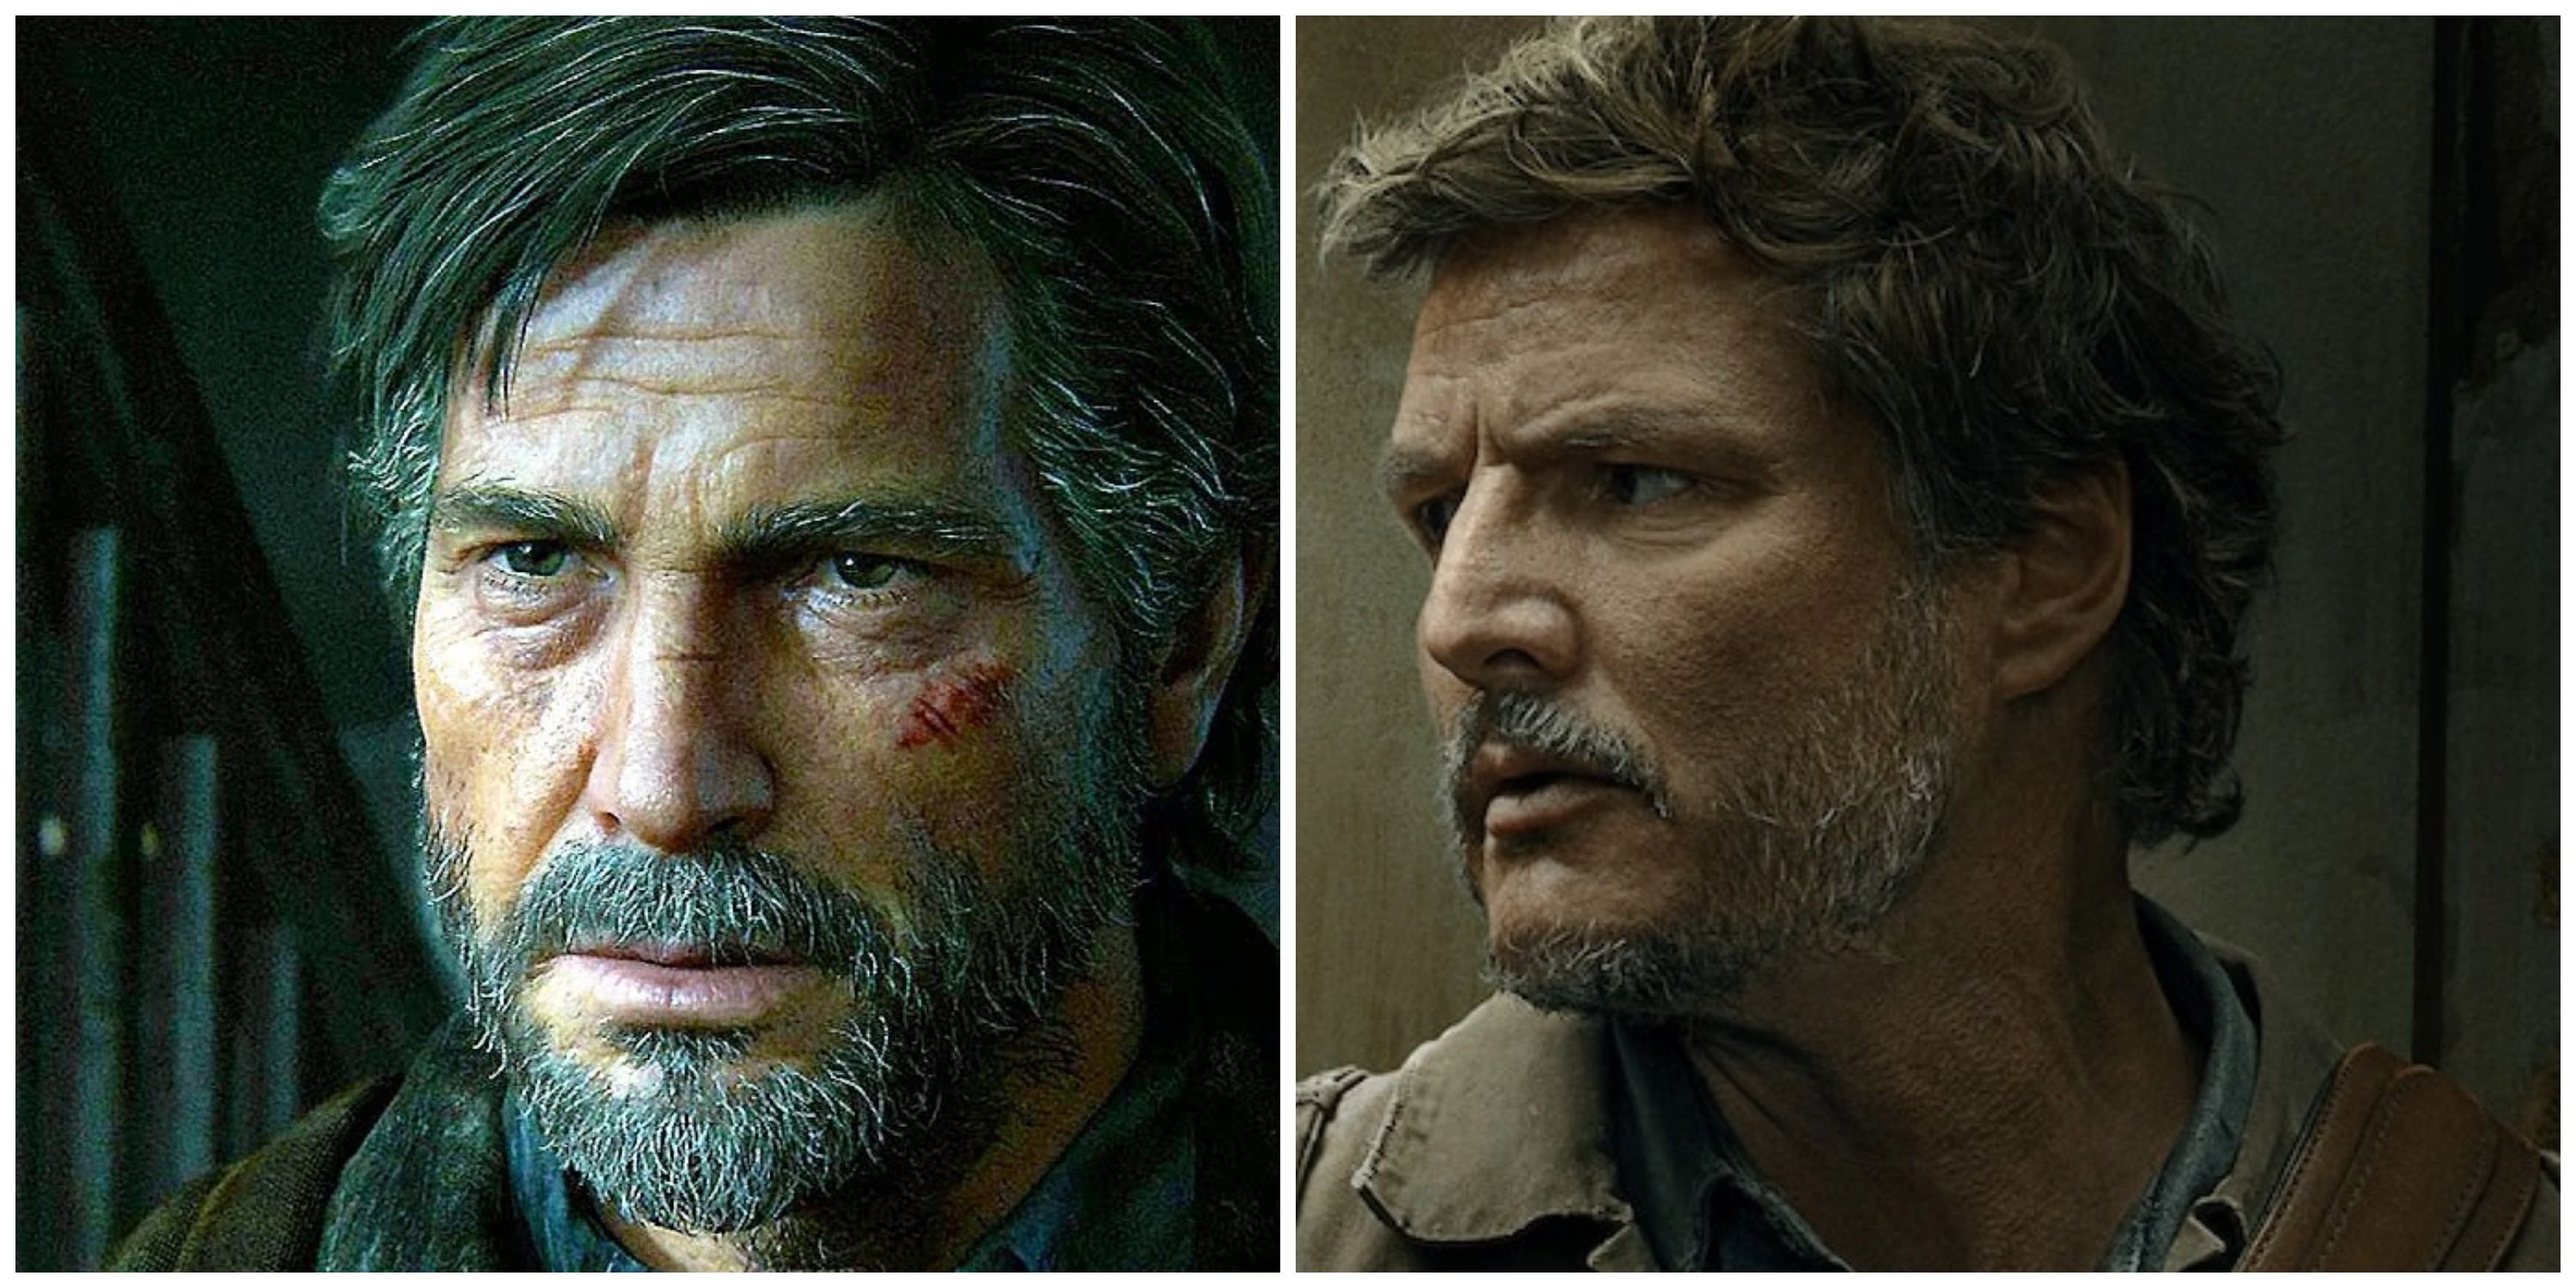 The Last of Us Series Creator Teases Joel's Fate in Season 2